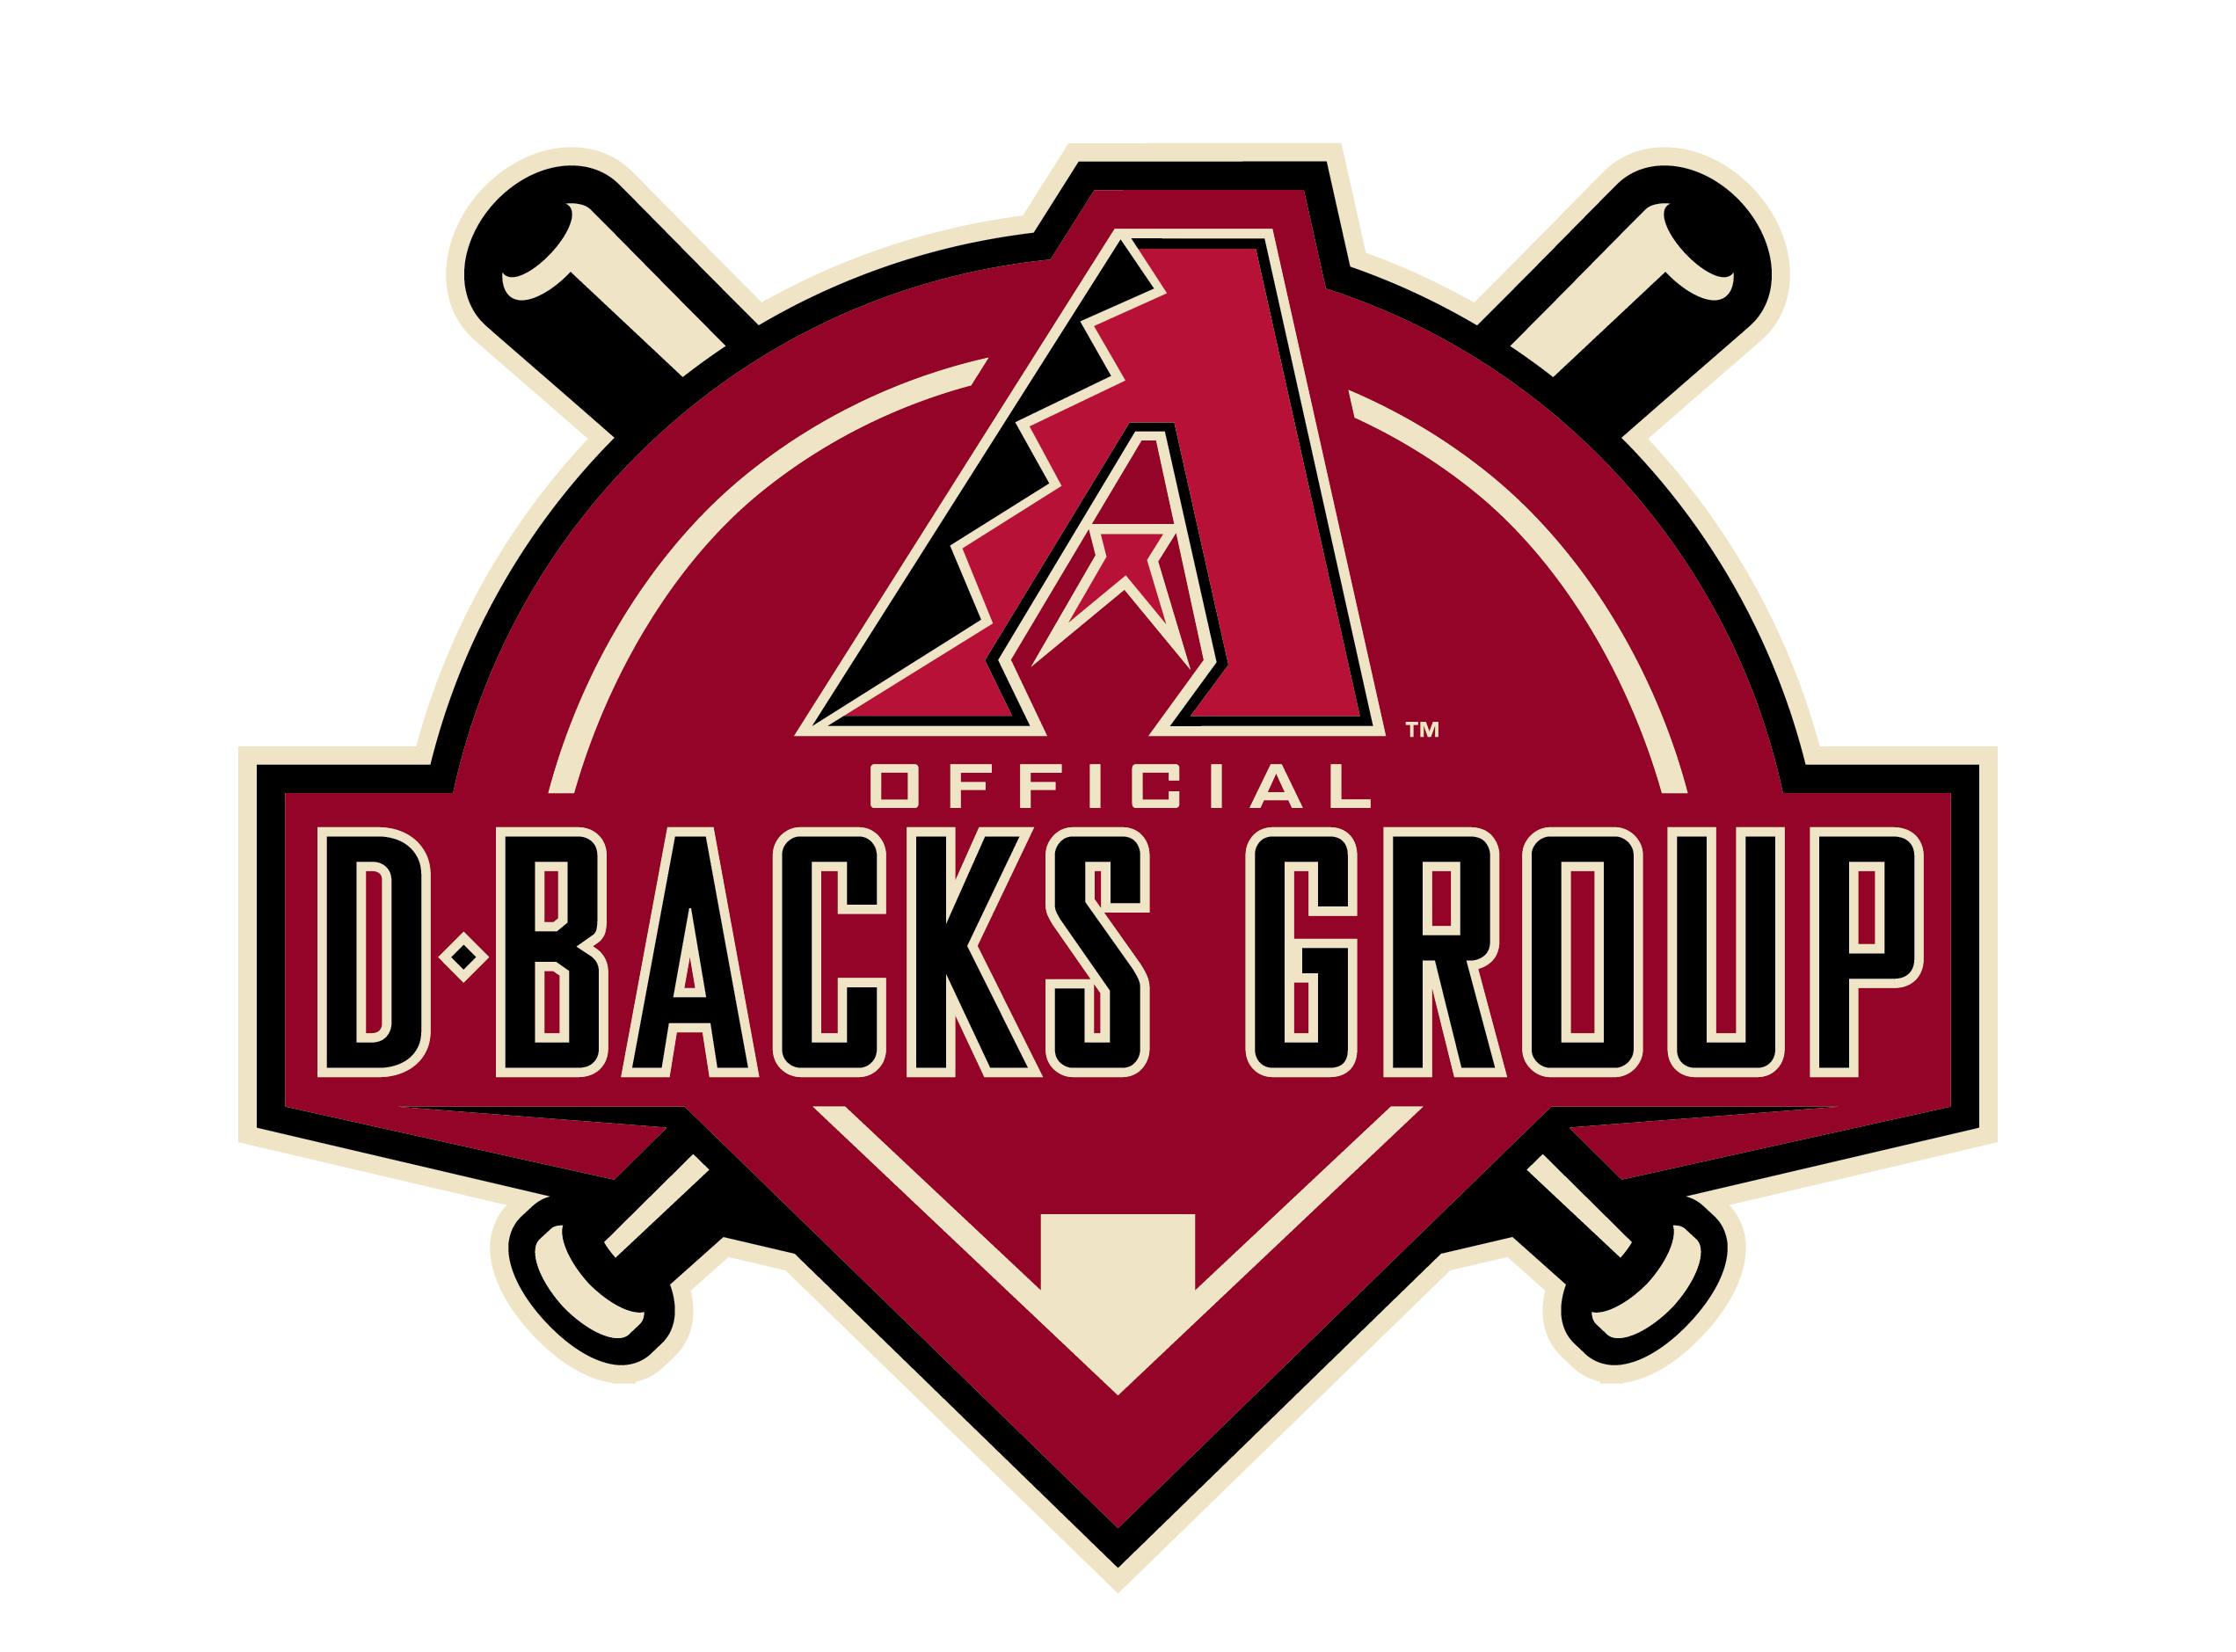 D-backs_Official-D-backs-Group_Logo